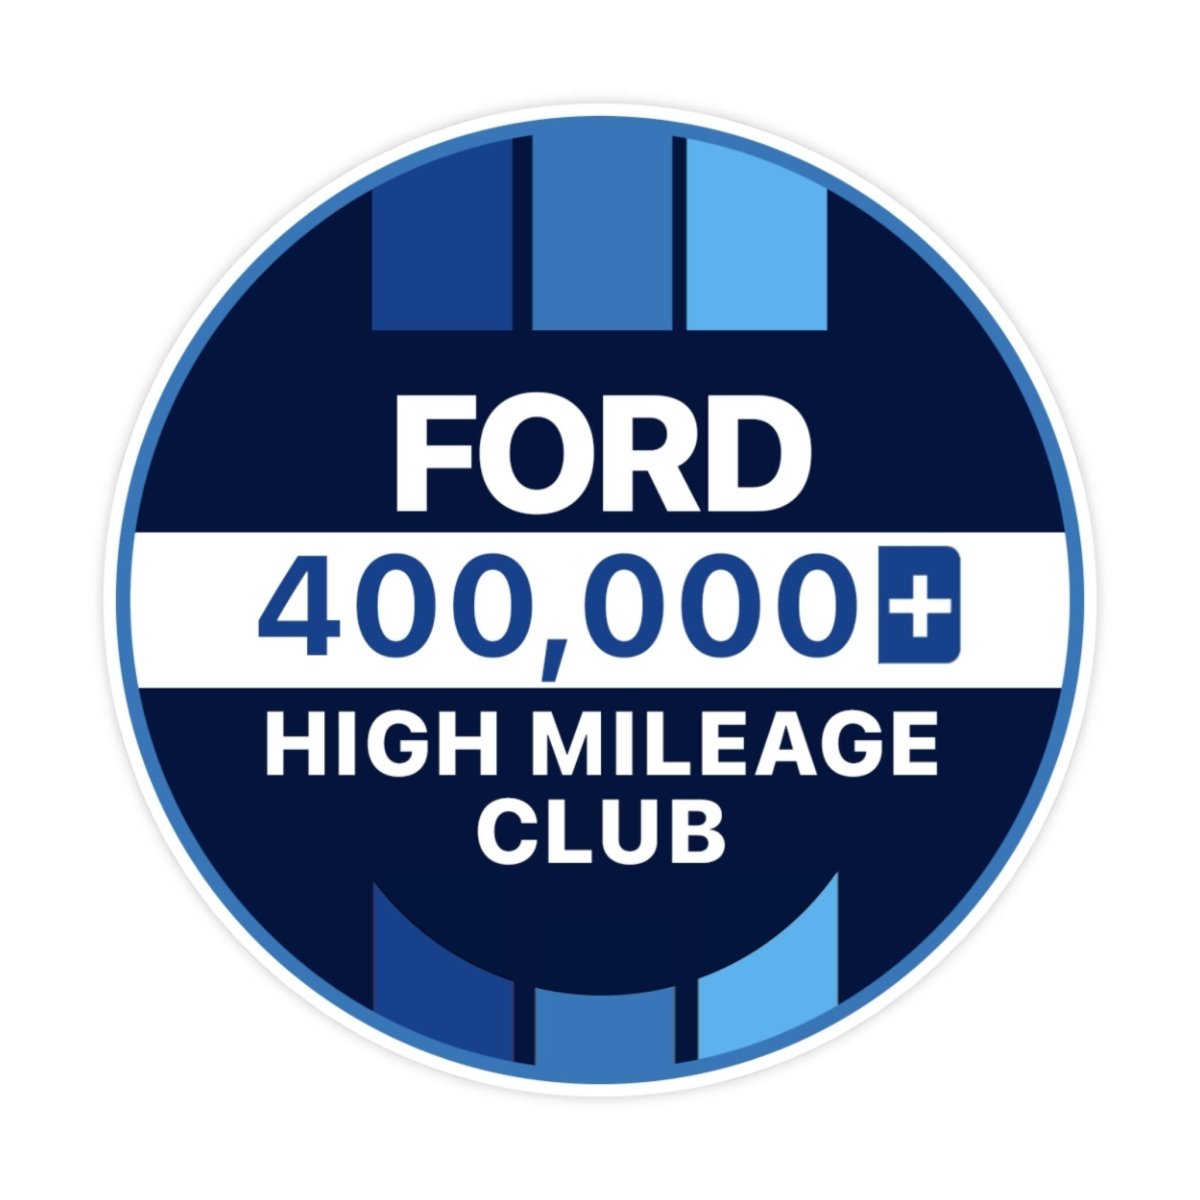 Ford 200k High Mileage Club Sticker - stickerbullFord 200k High Mileage Club StickerRetail StickerstickerbullstickerbullTaylor_Ford400k [#121]400kFord 200k High Mileage Club Sticker